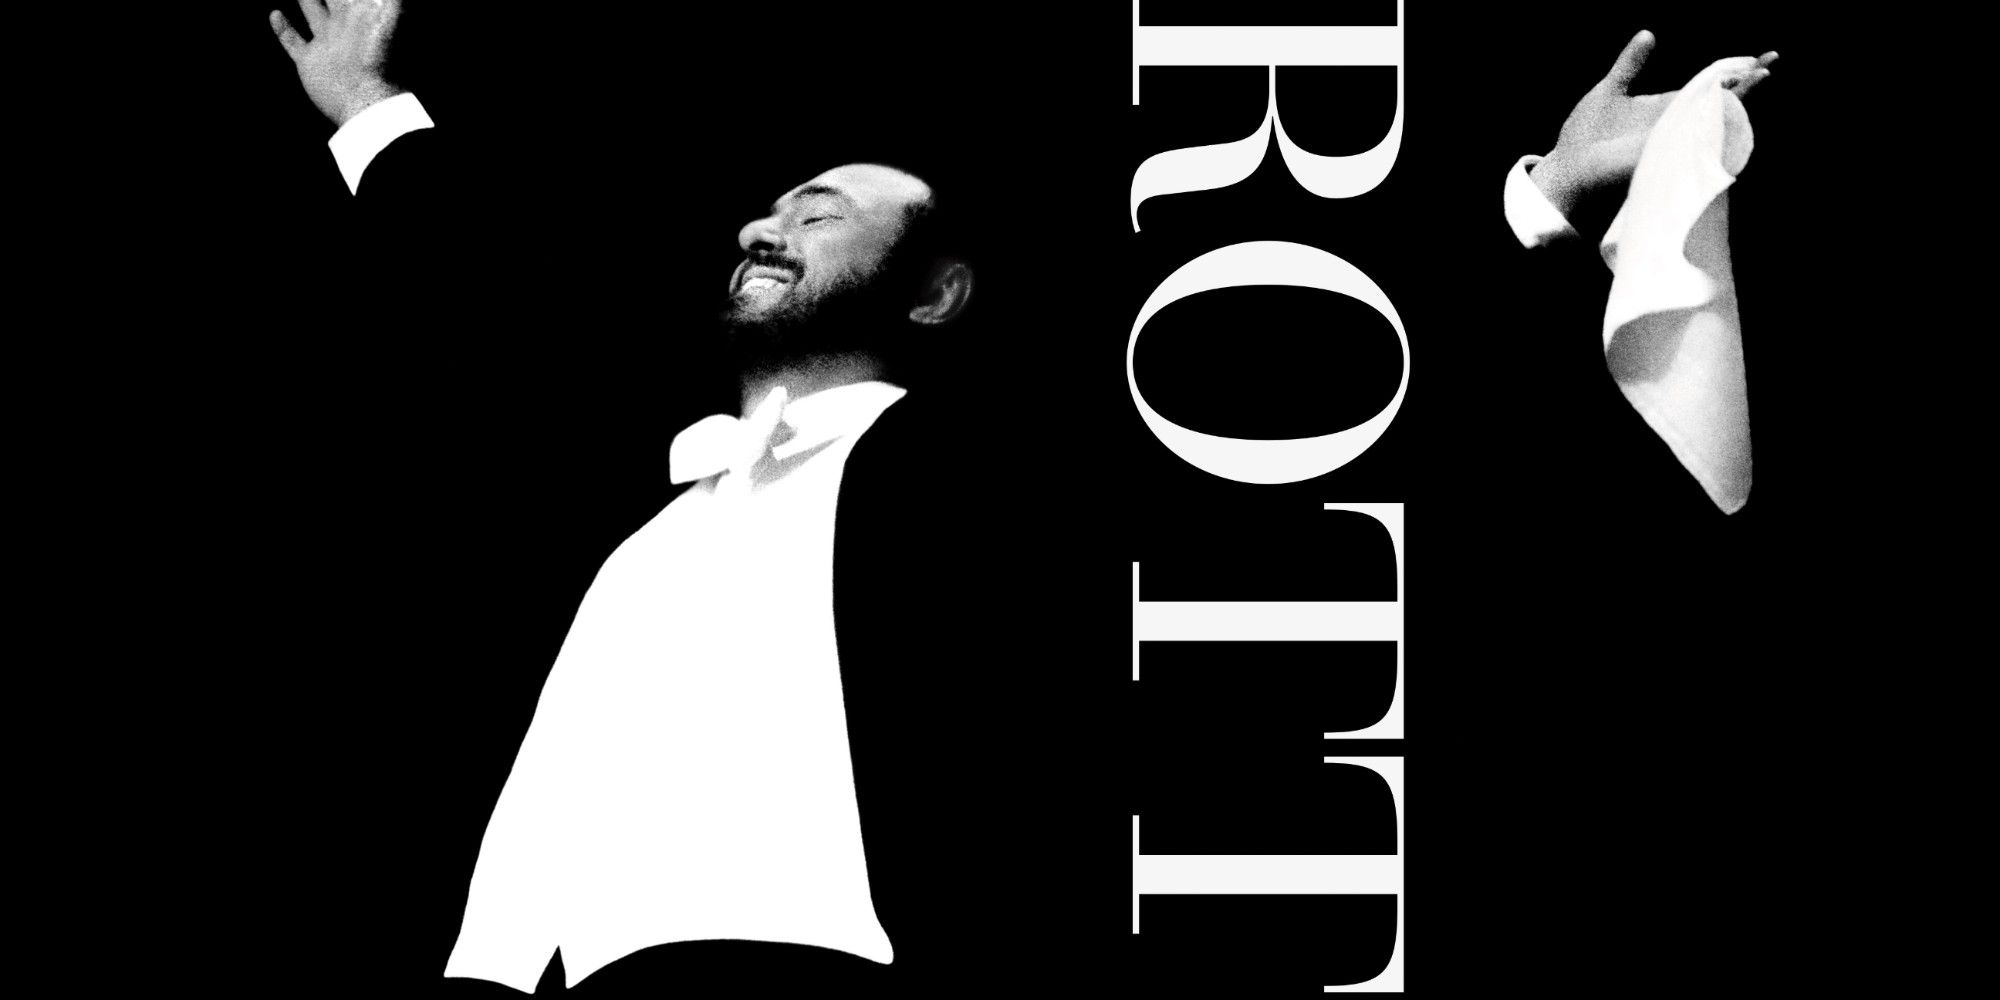 El tráiler y el póster de Pavarotti muestran el documental Pavarotti de Ron Howard